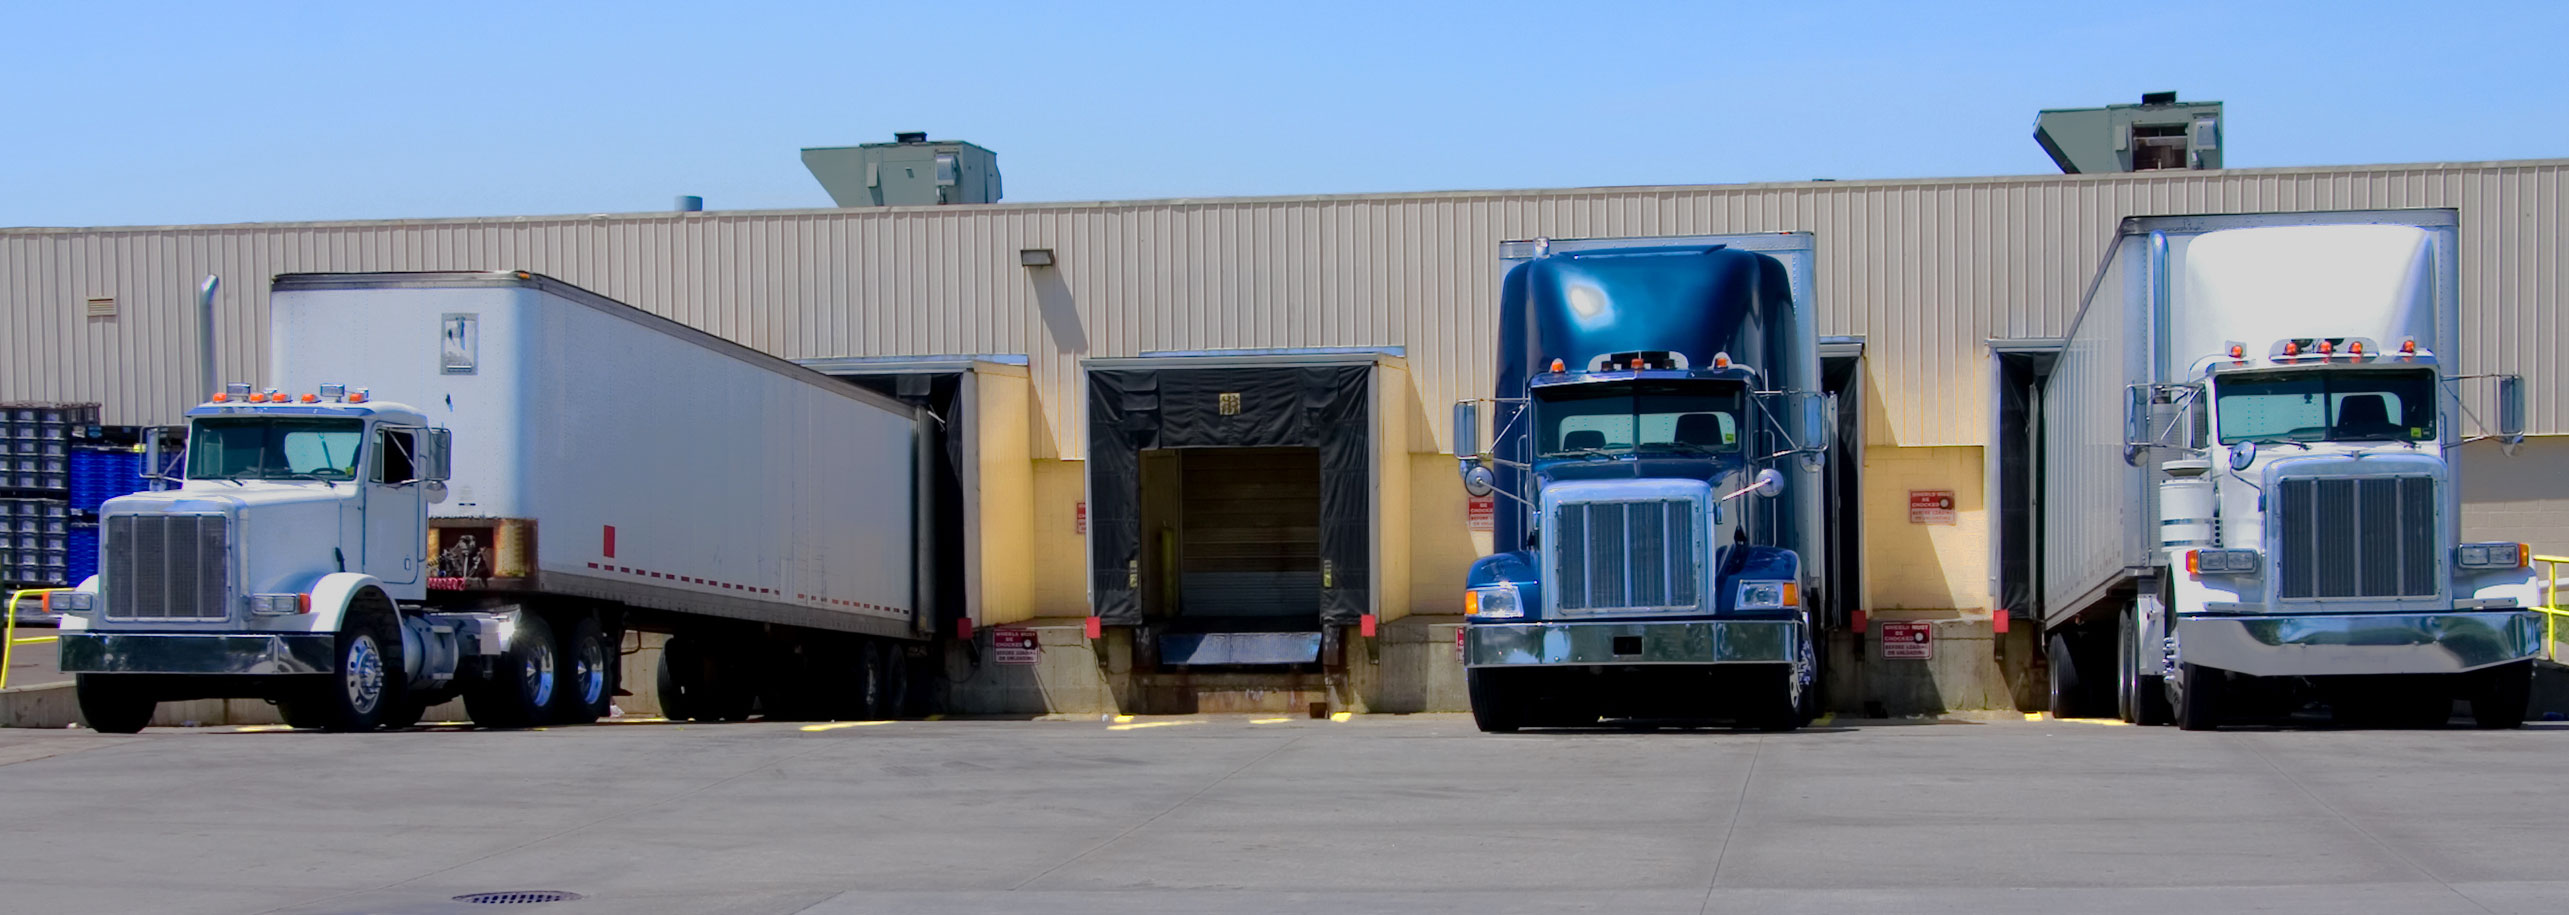 Three semi trucks backed up to loading dock of warehouse